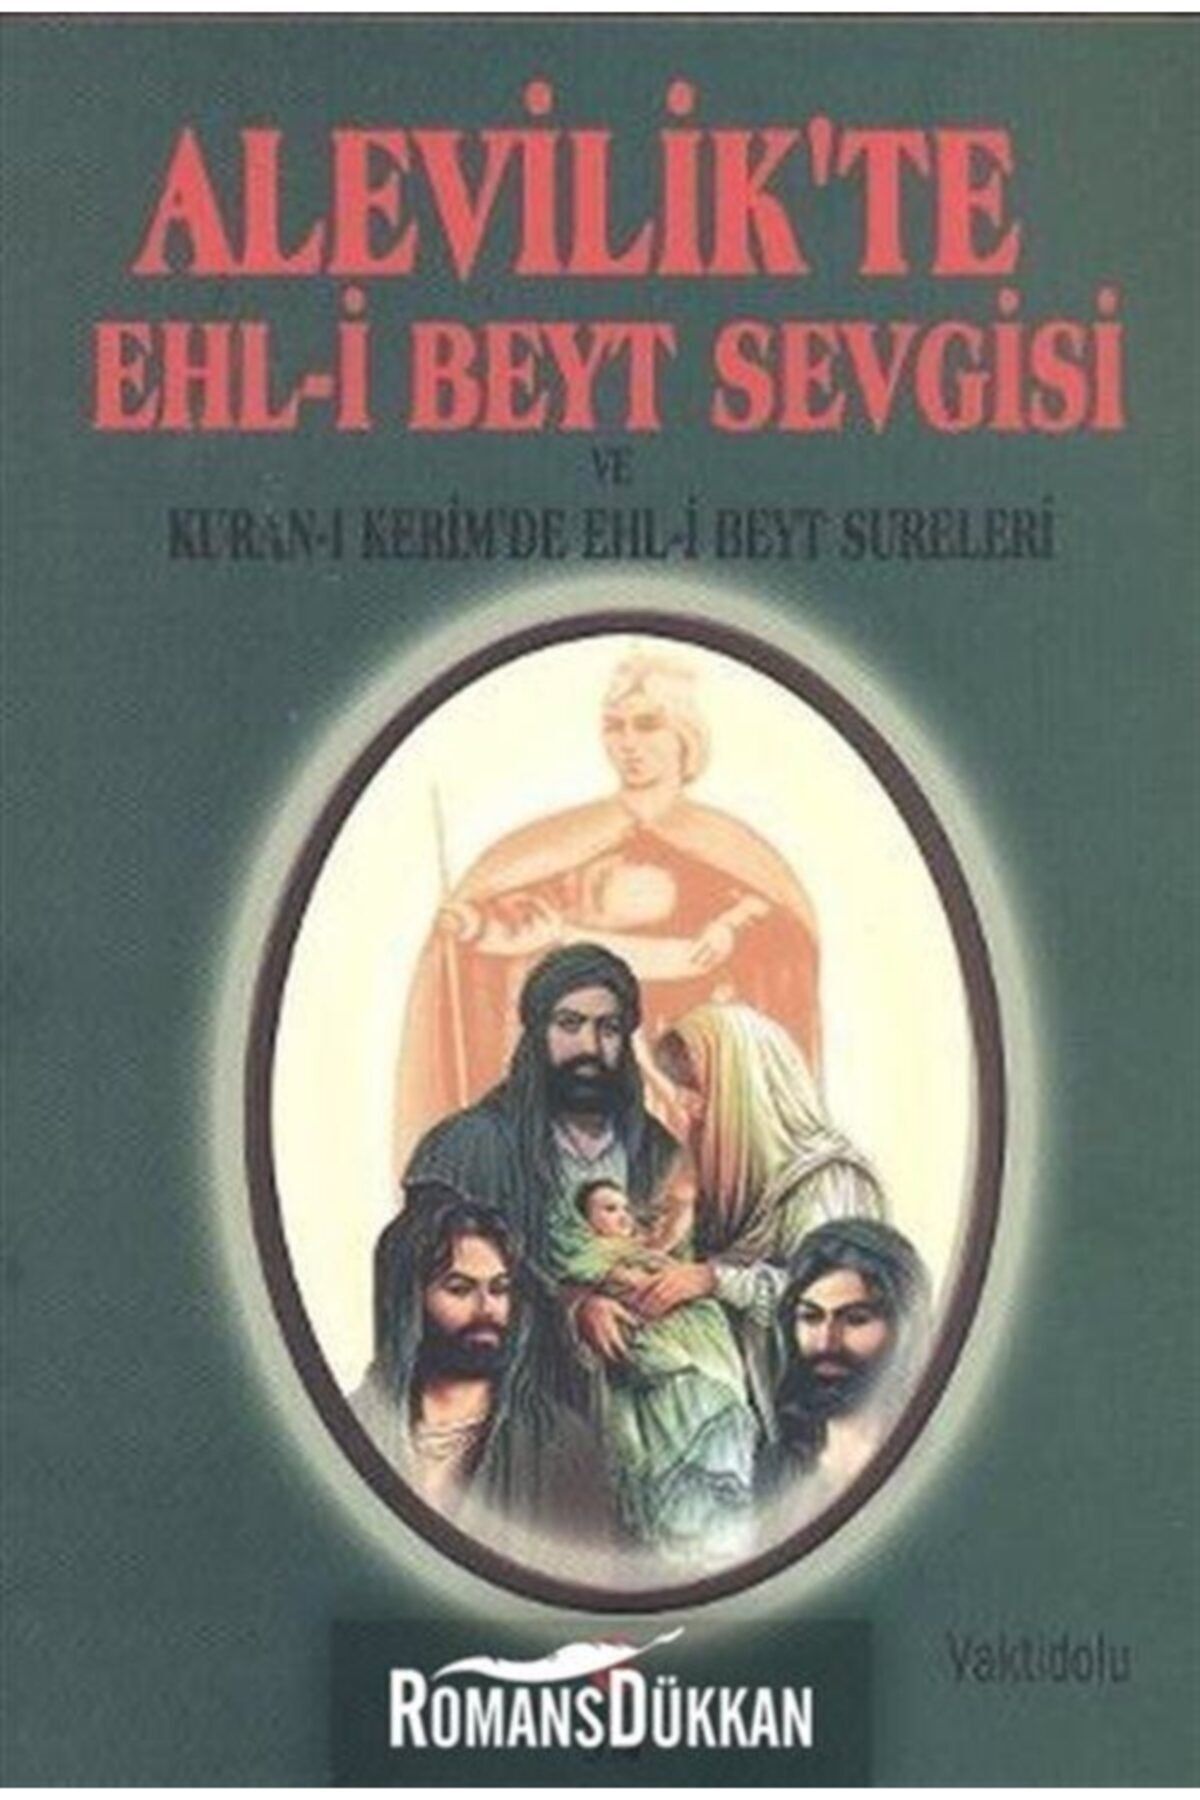 Can Yayınları Alevilik'te Ehl-i Beyt Sevgisi Ve Kuran-ı Kerim'de Ehl-i Beyt Sureleri